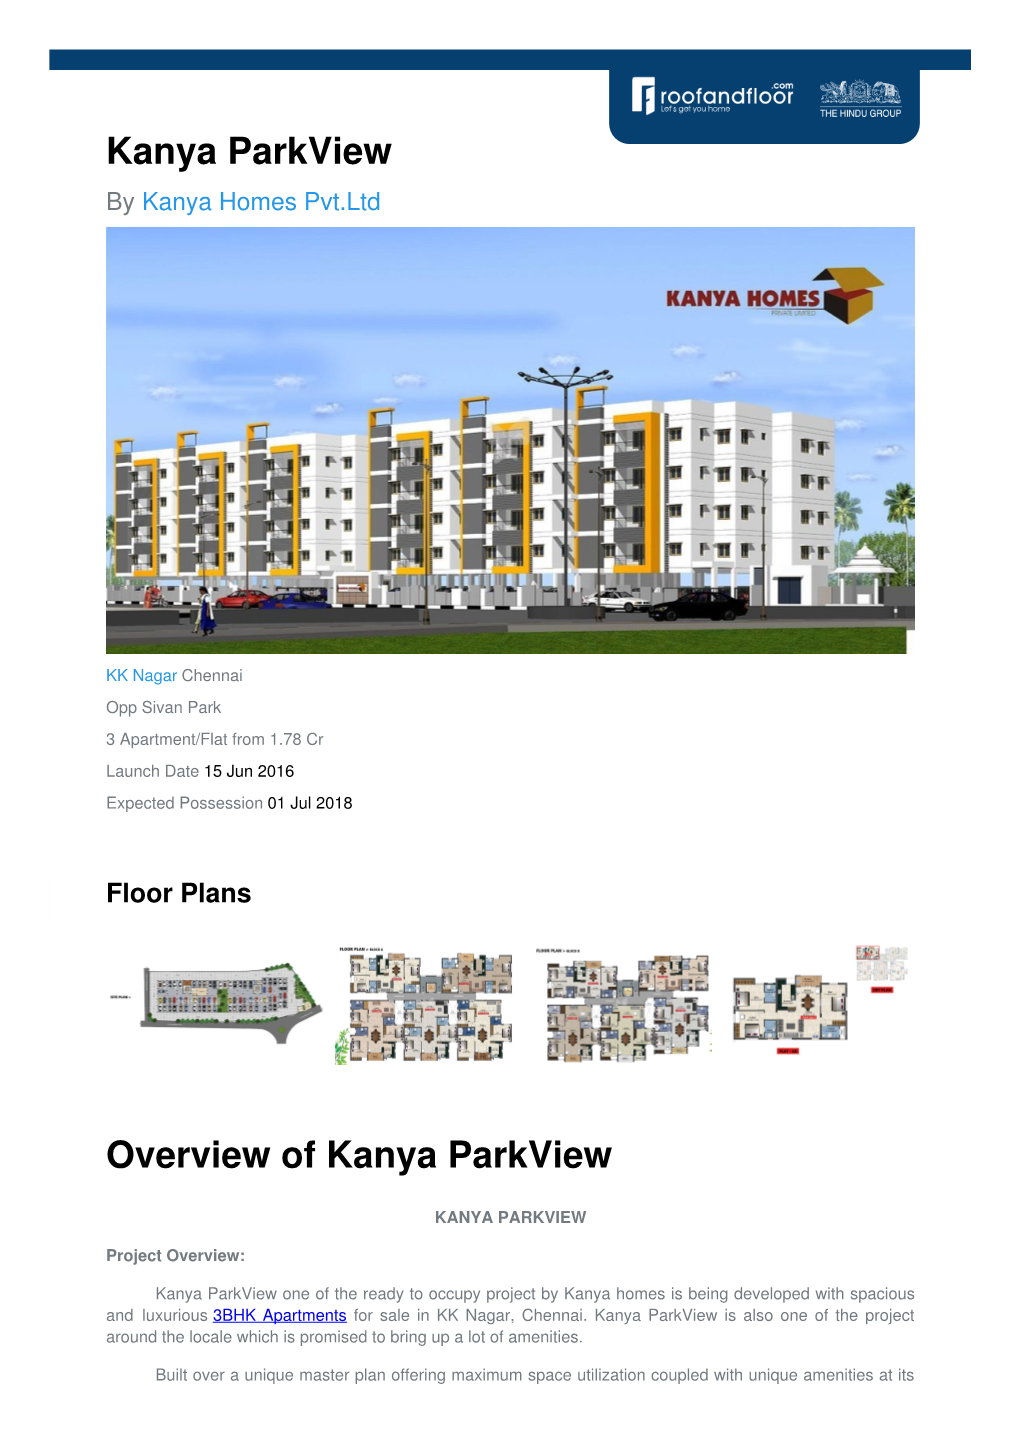 Kanya Parkview by Kanya Homes Pvt.Ltd